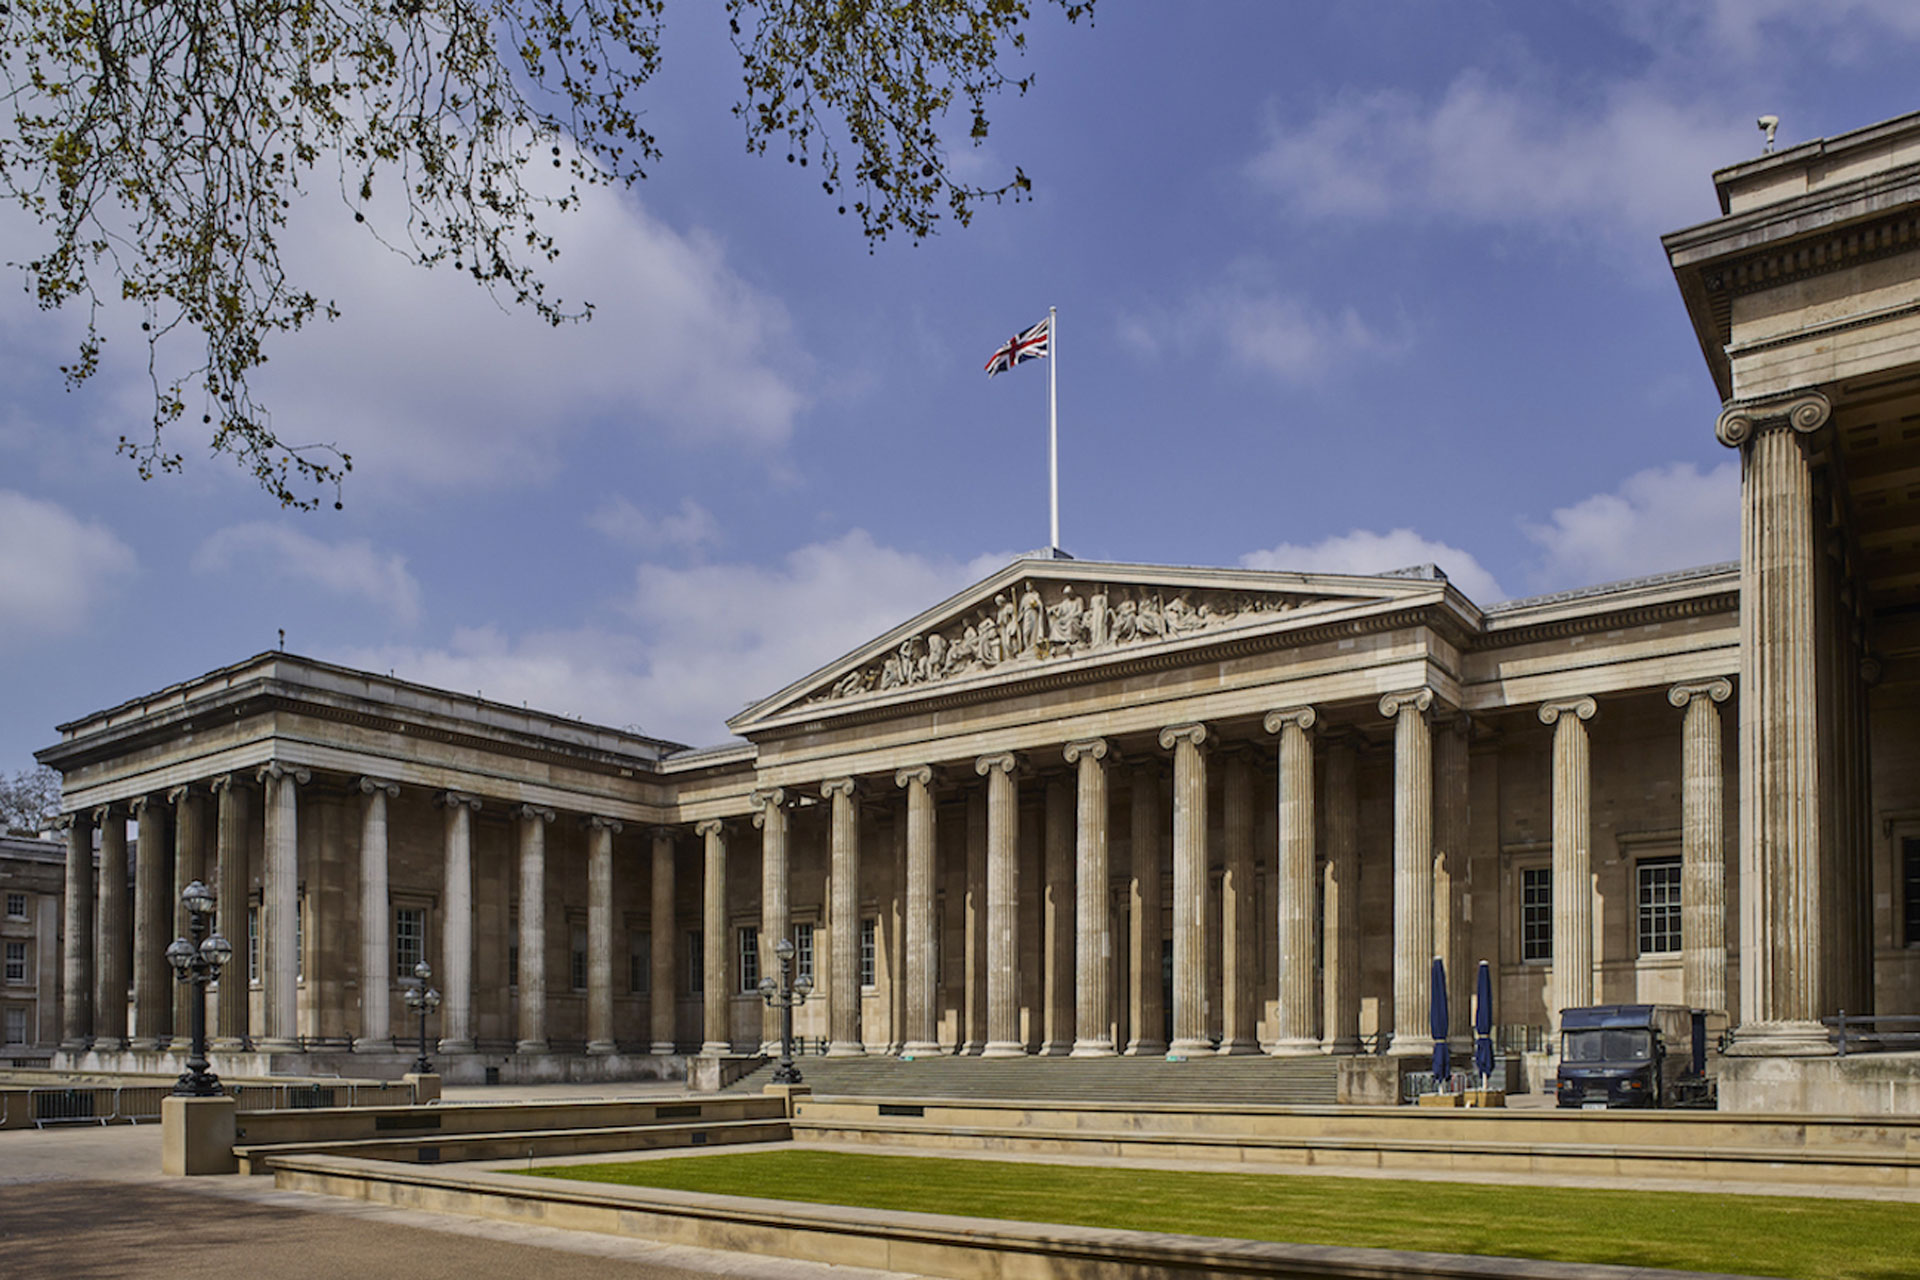 Facade of The British Museum